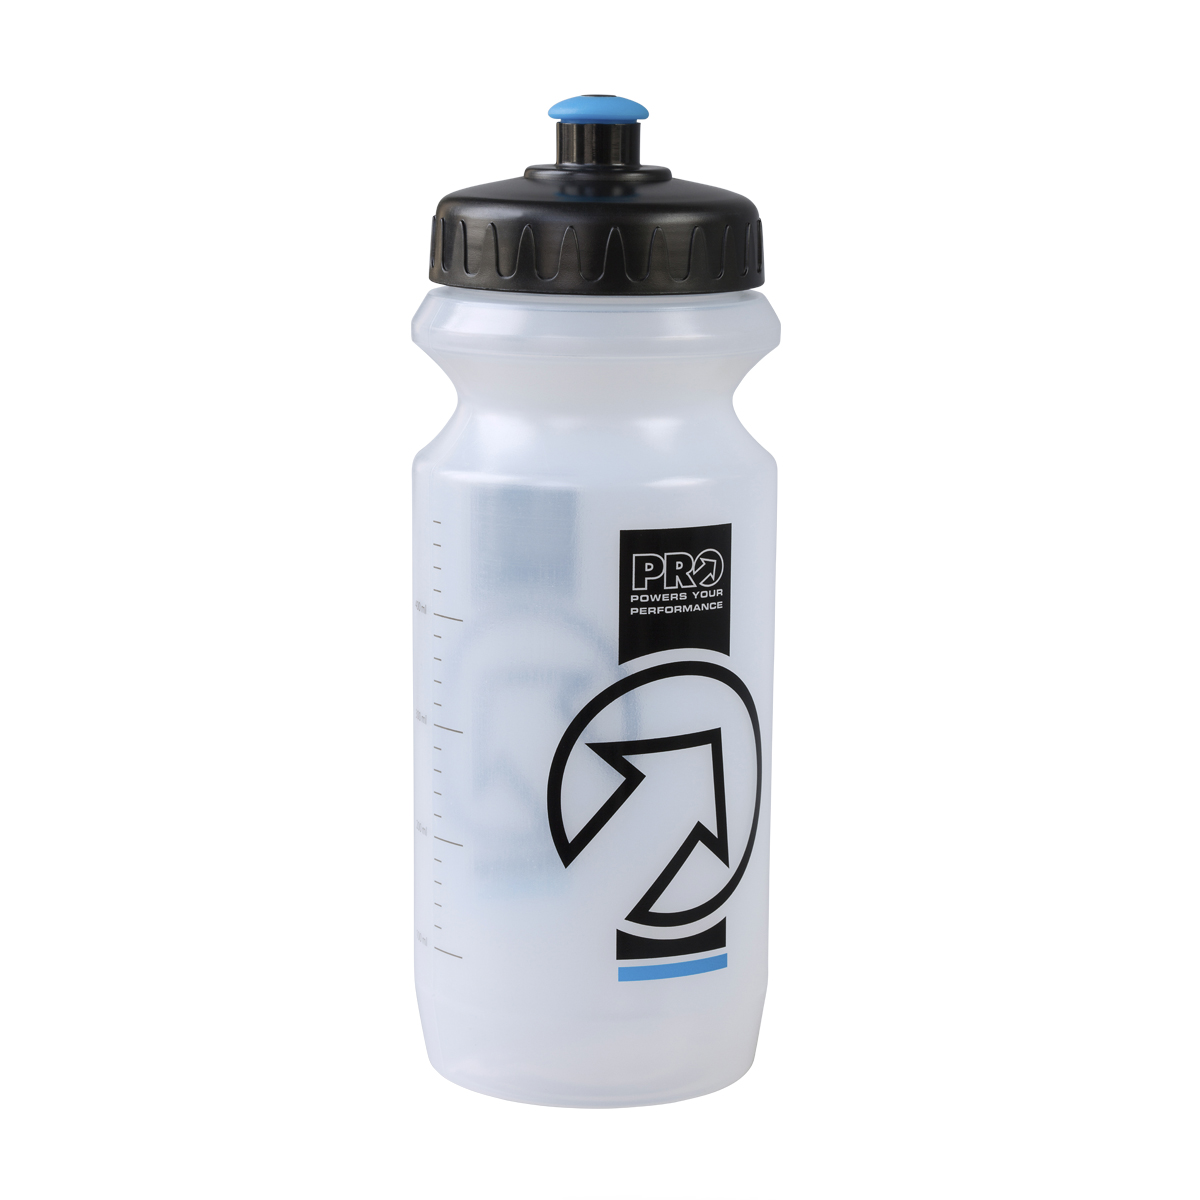 Прозрачные бутылки для воды. Фляга шимано для велосипеда Pro. Shimano DL-600c фляга велосипедная прозрачная. Sis бутылка для воды 600 мл. Бутылка Shimano.